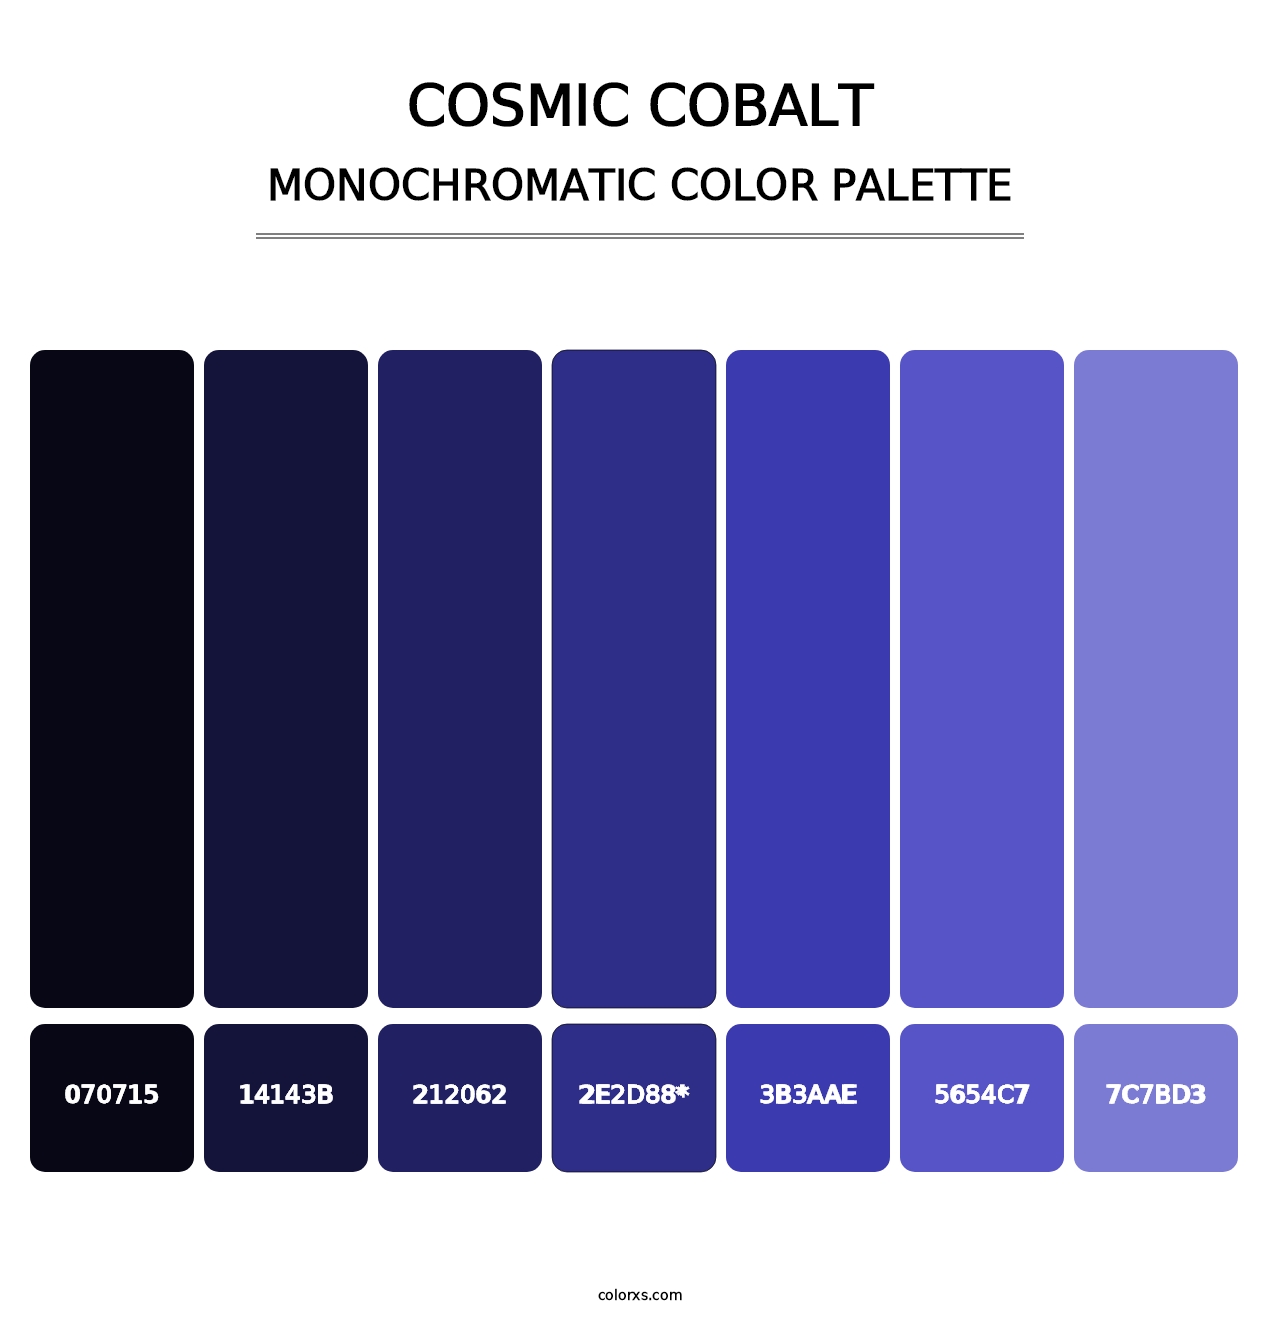 Cosmic Cobalt - Monochromatic Color Palette